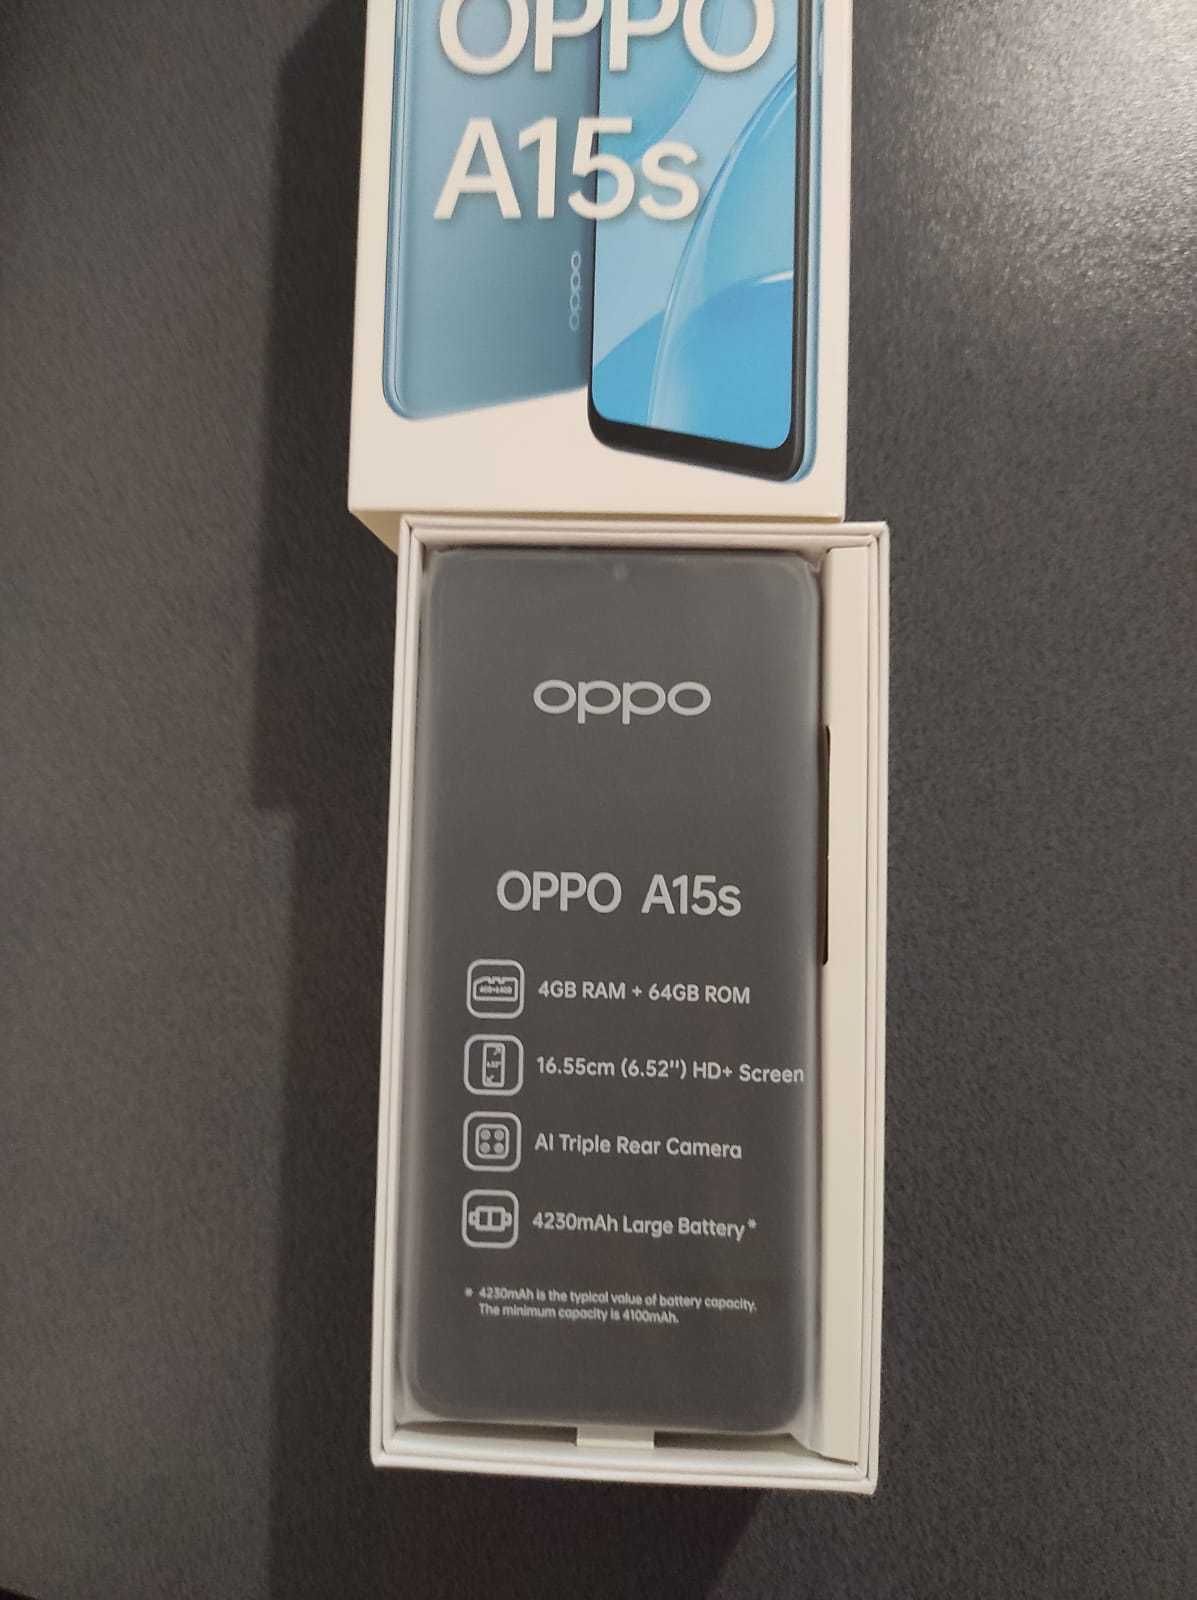 Telefon OPPO A15s 4GB|64GB nowy, nieużywany